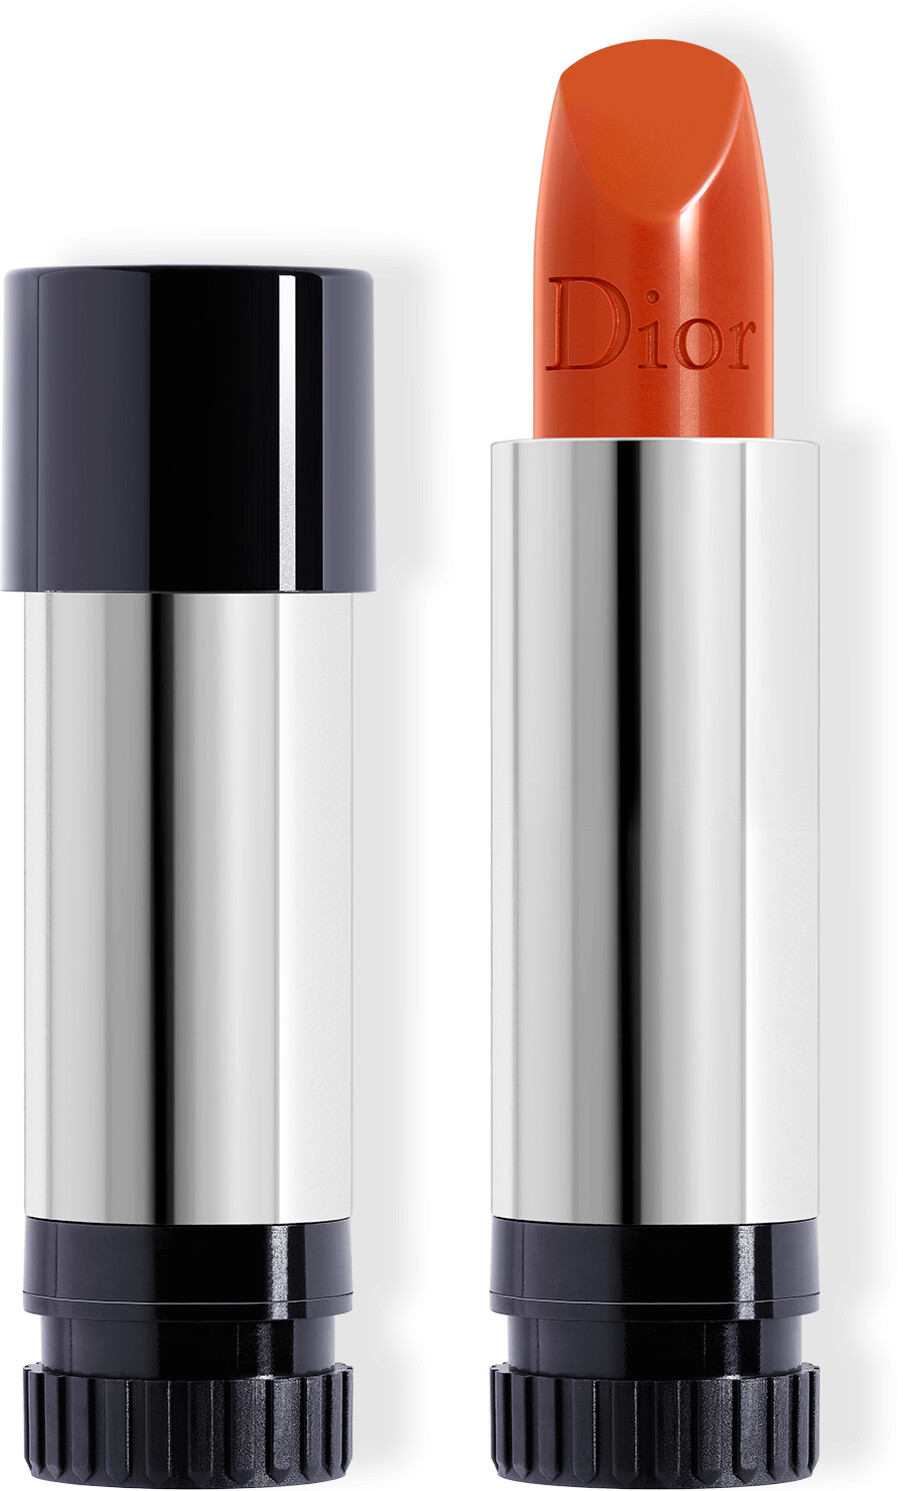 DIOR Rouge Dior Coloured Lip Balm Refill 3.5g 846 - Concorde - Satin